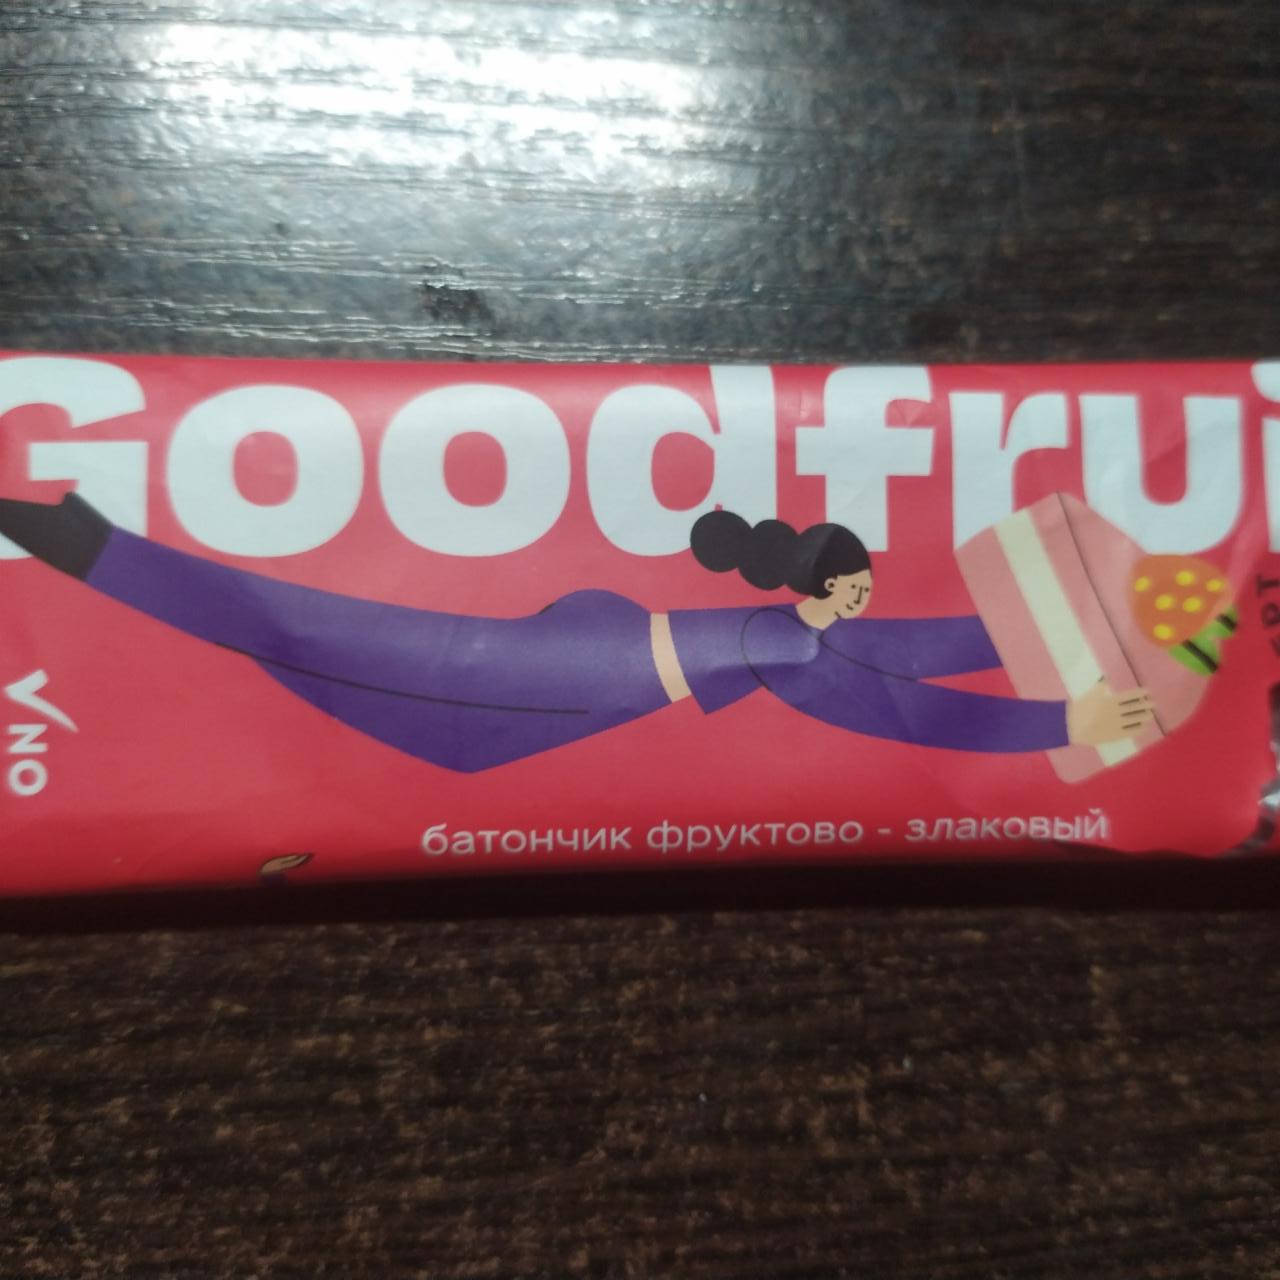 Фото - батончики фруктово-злаковый клубничный десерт Goodfruit